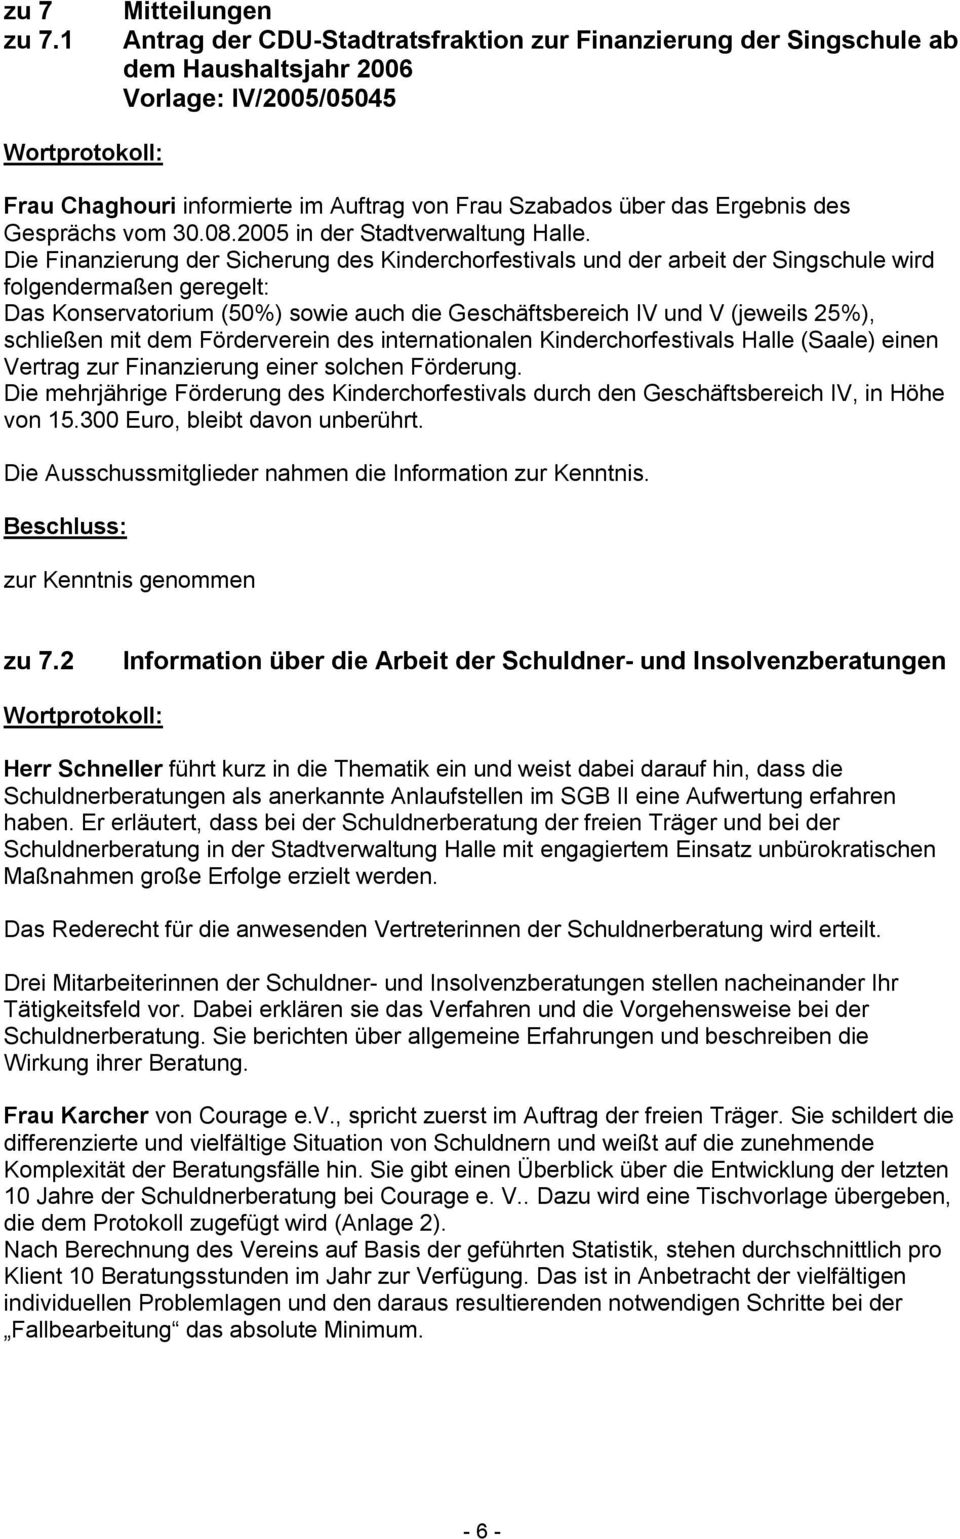 Ergebnis des Gesprächs vom 30.08.2005 in der Stadtverwaltung Halle.